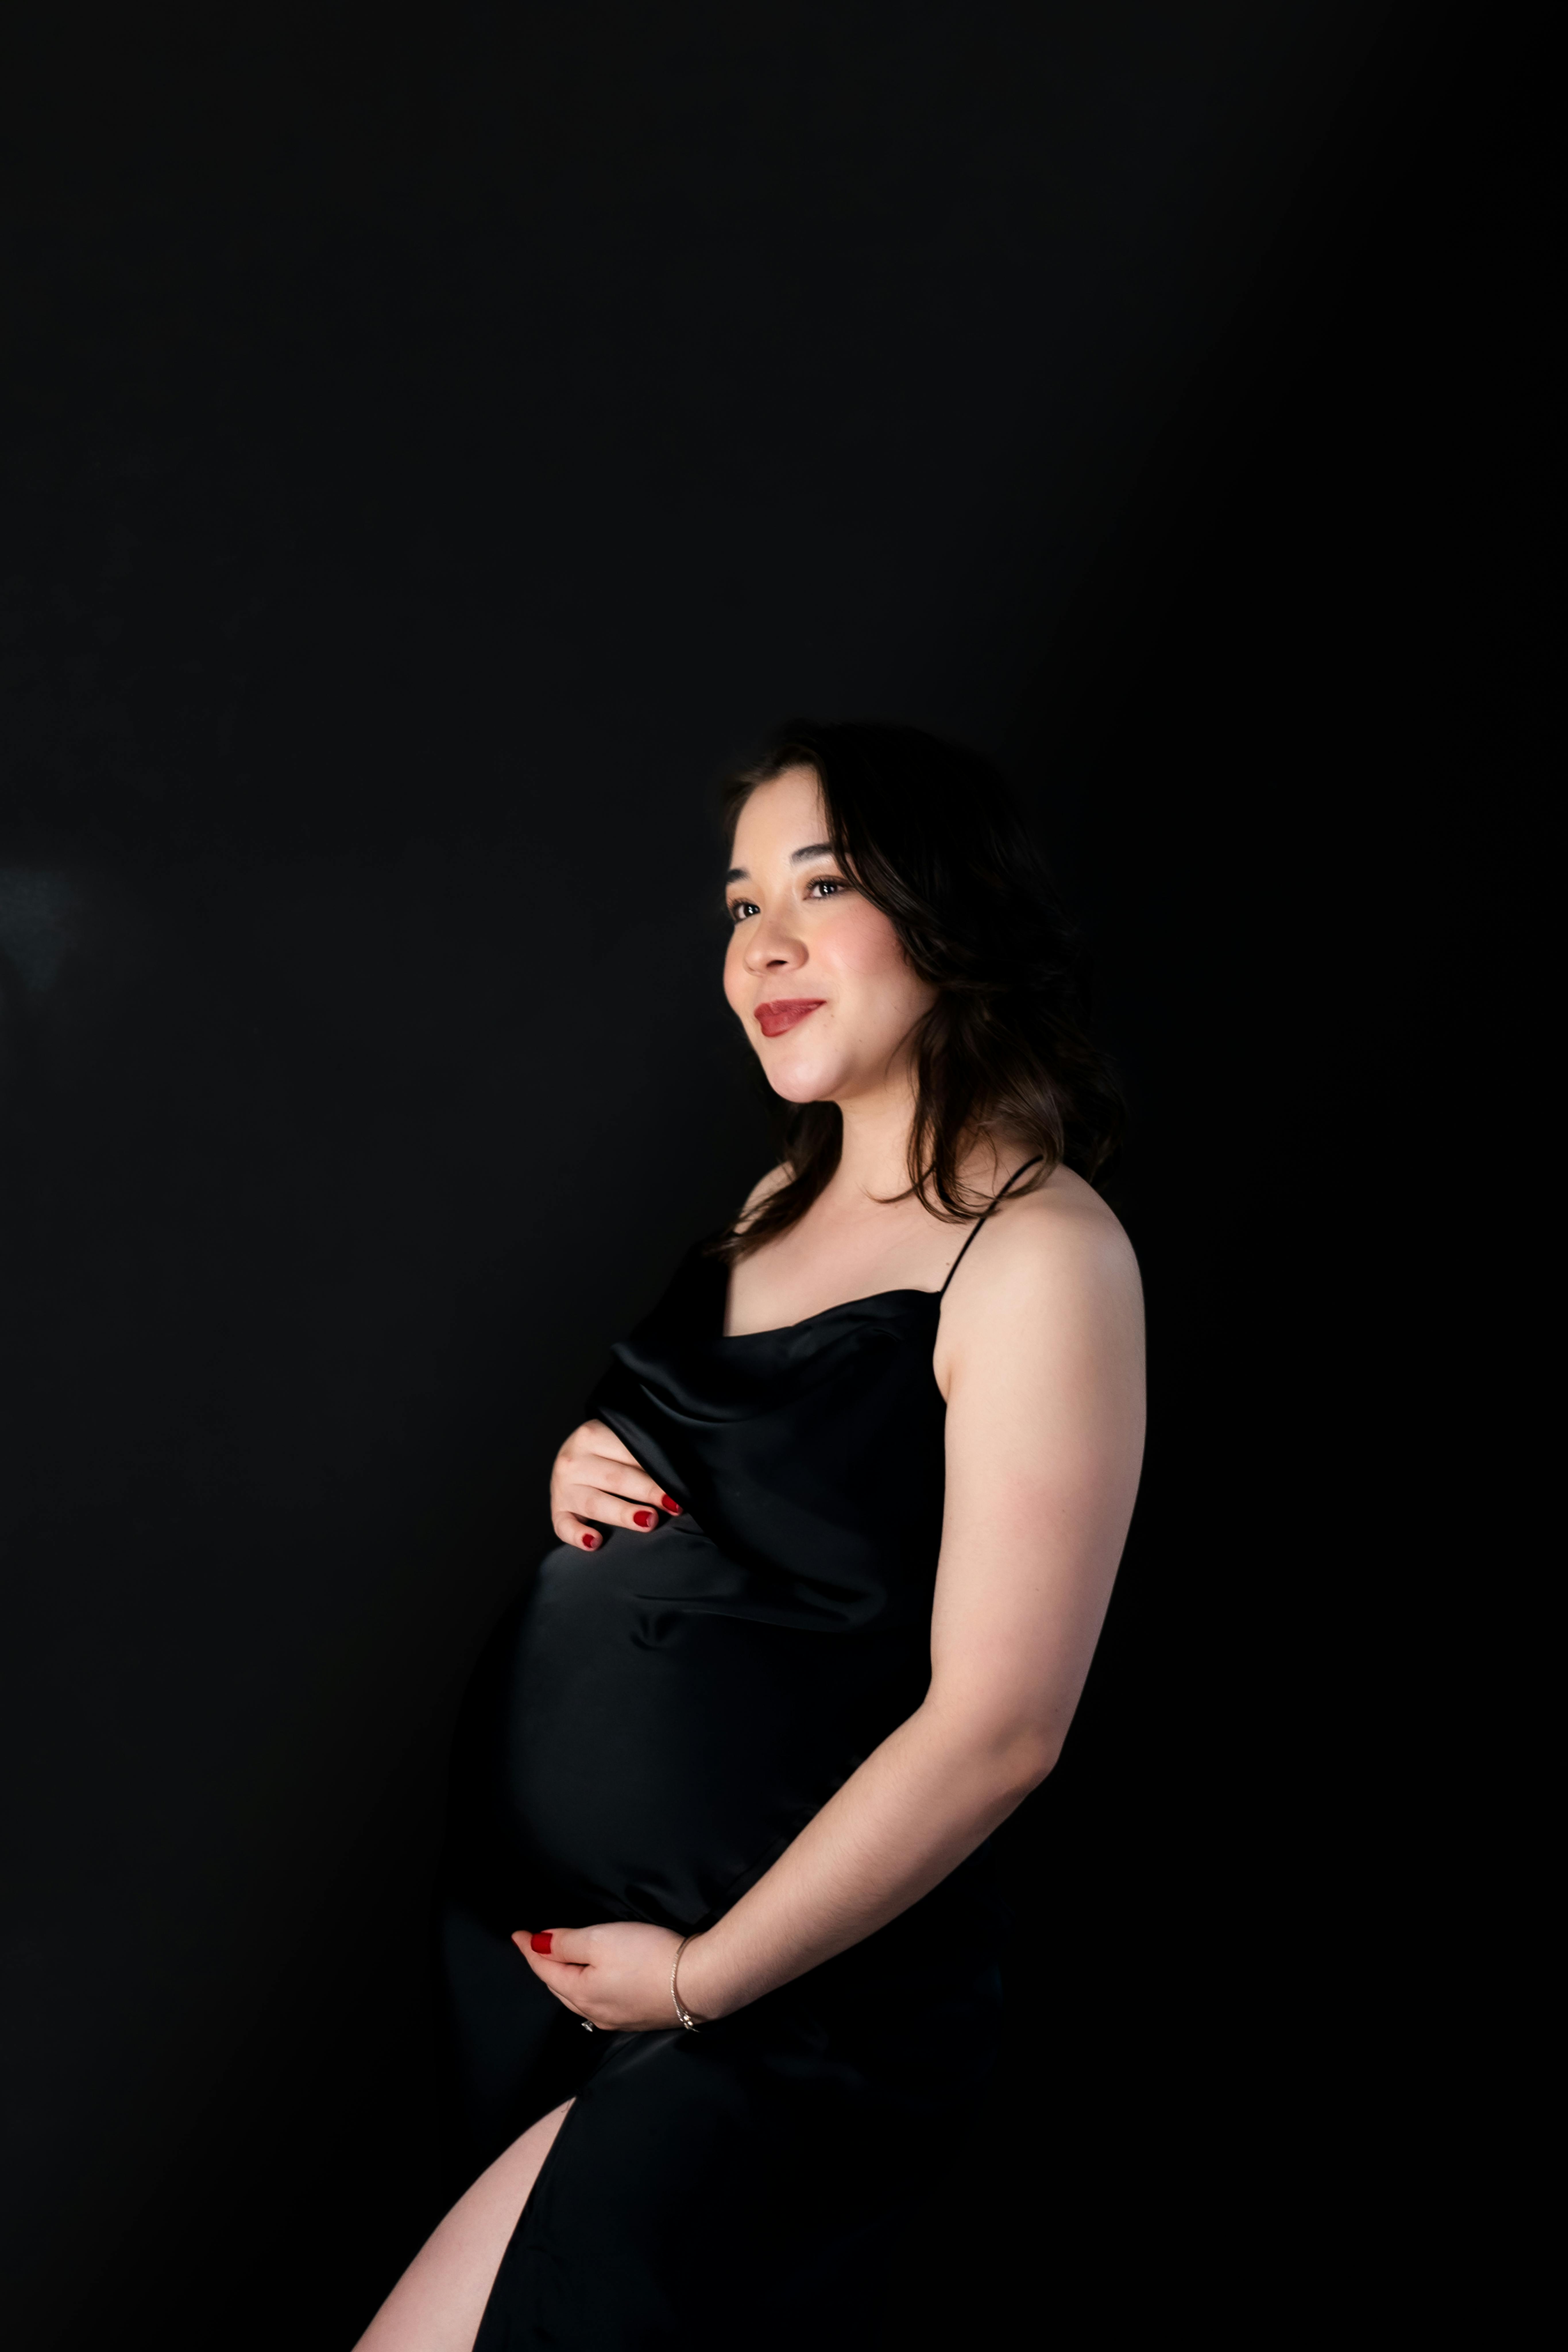 Black pregnant woman dress : 11 985 images, photos de stock, objets 3D et  images vectorielles